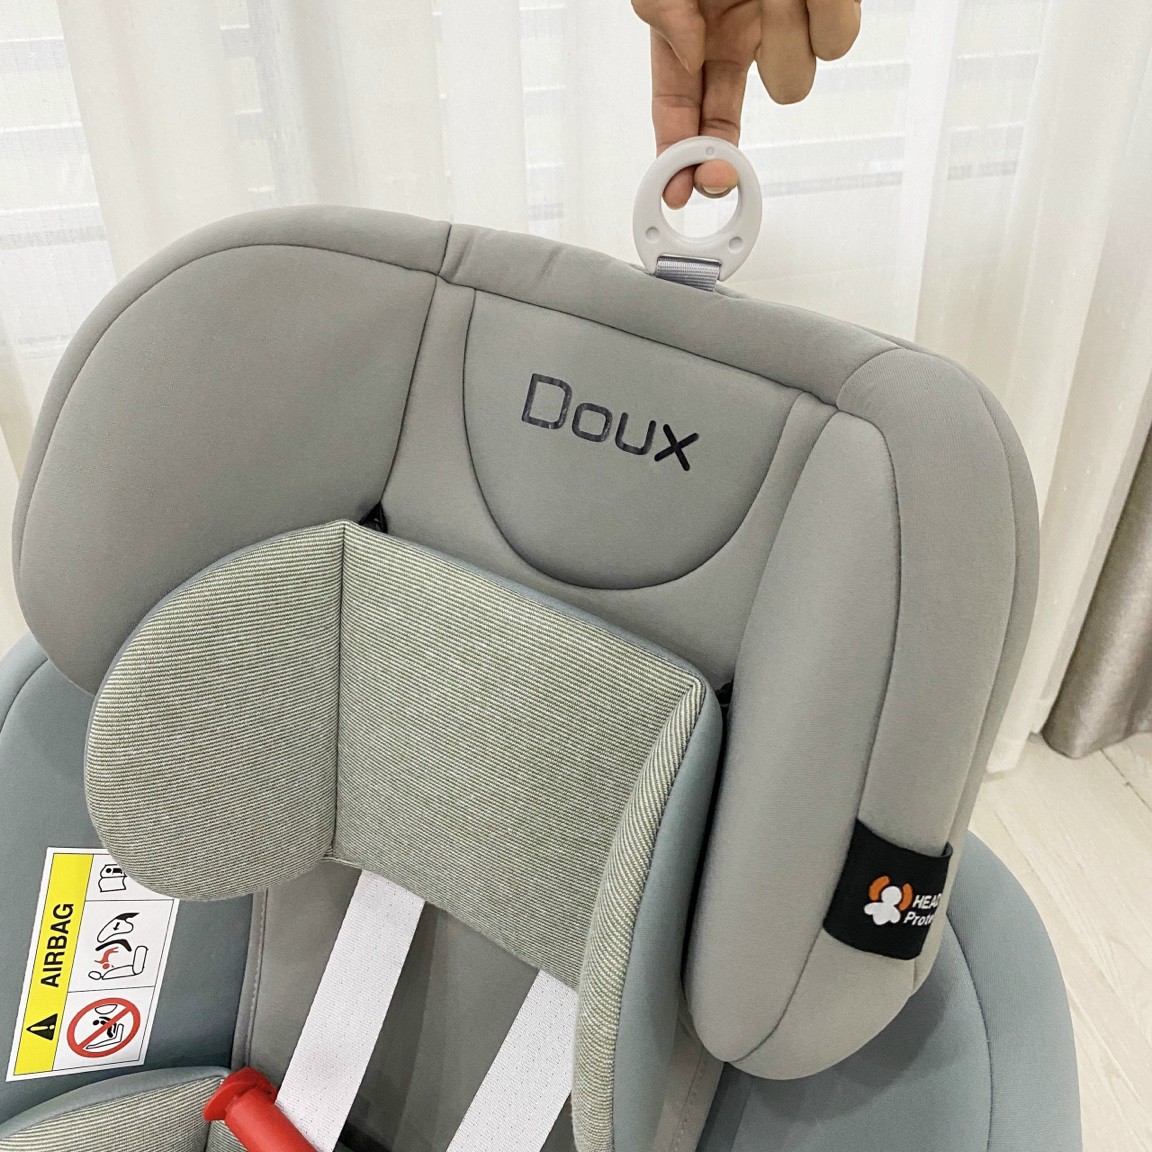 Ghế Carseat doux - ghế ô tô an toàn cho các gia đình và bé yêu đi du lịch